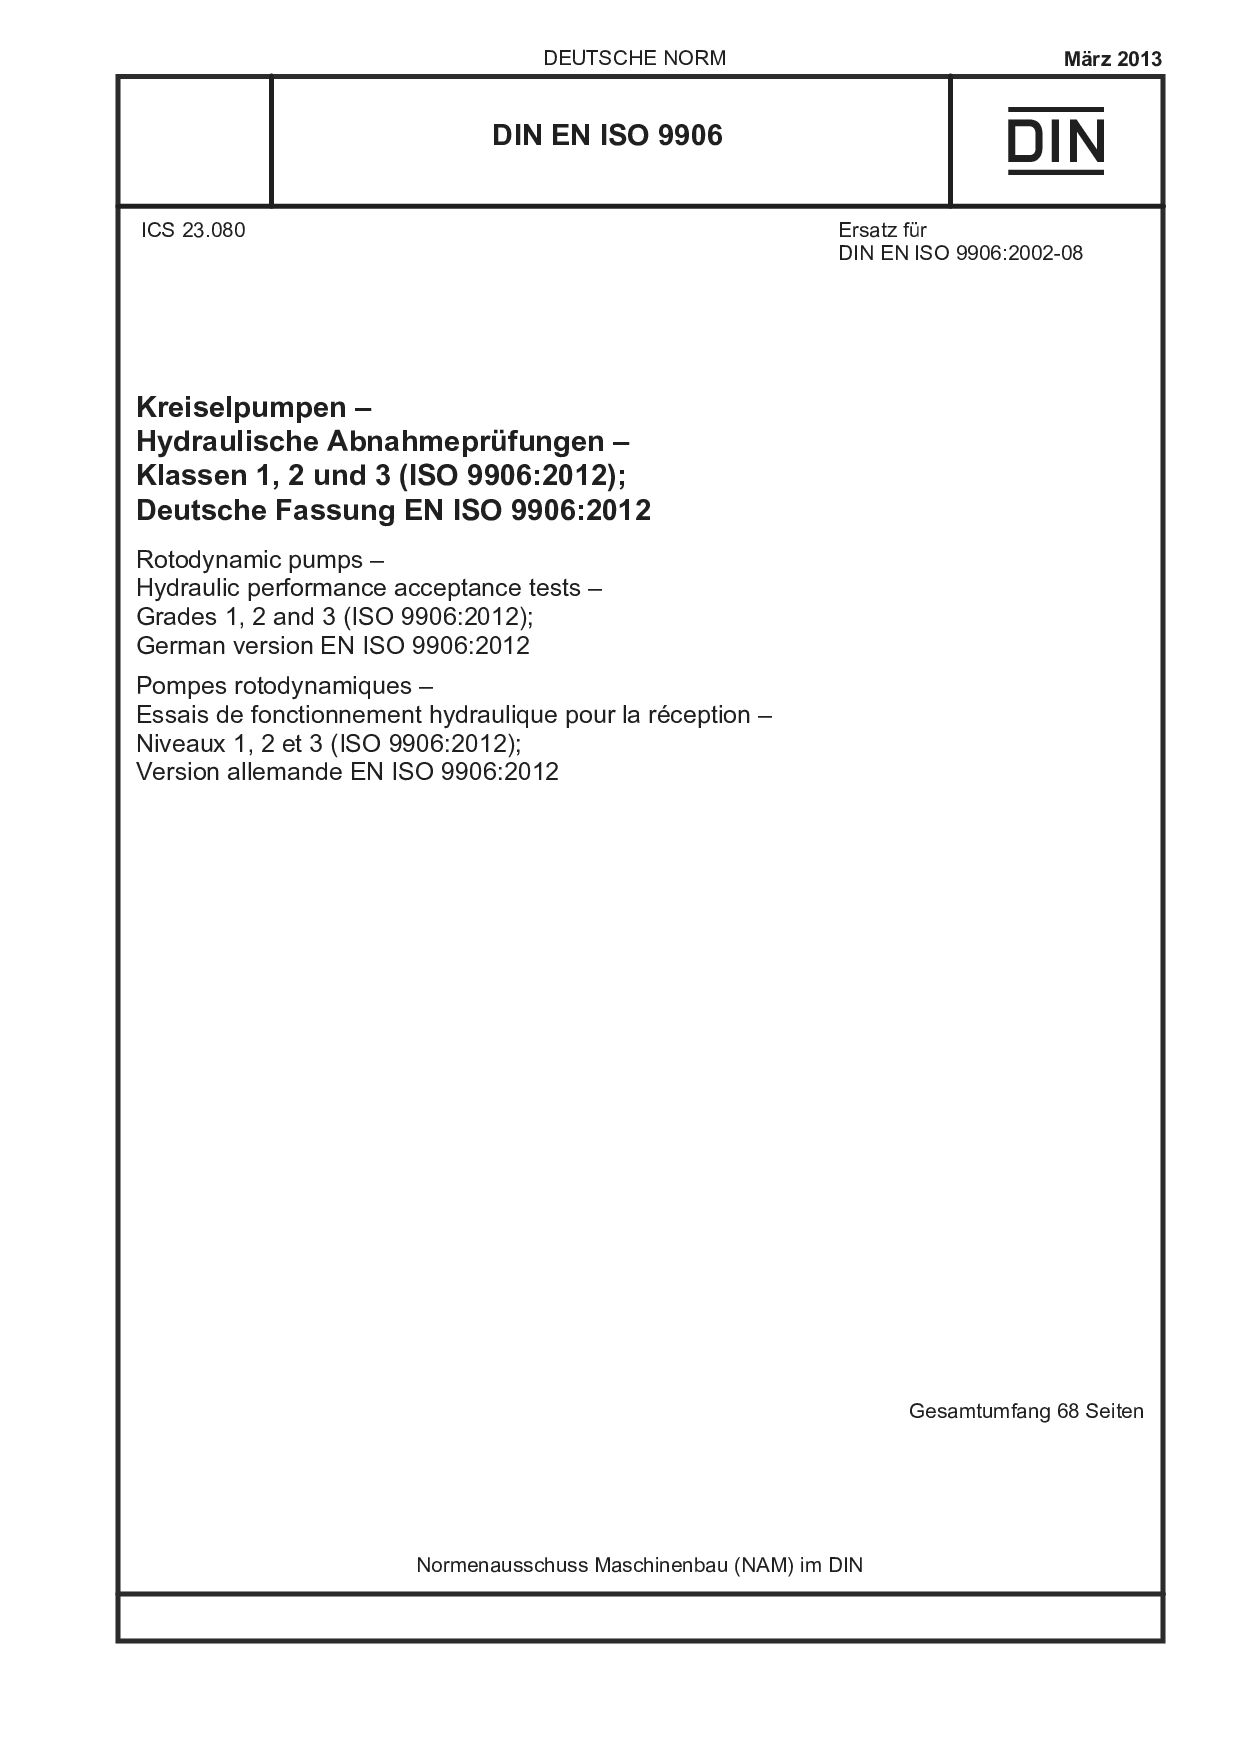 DIN EN ISO 9906:2013-03